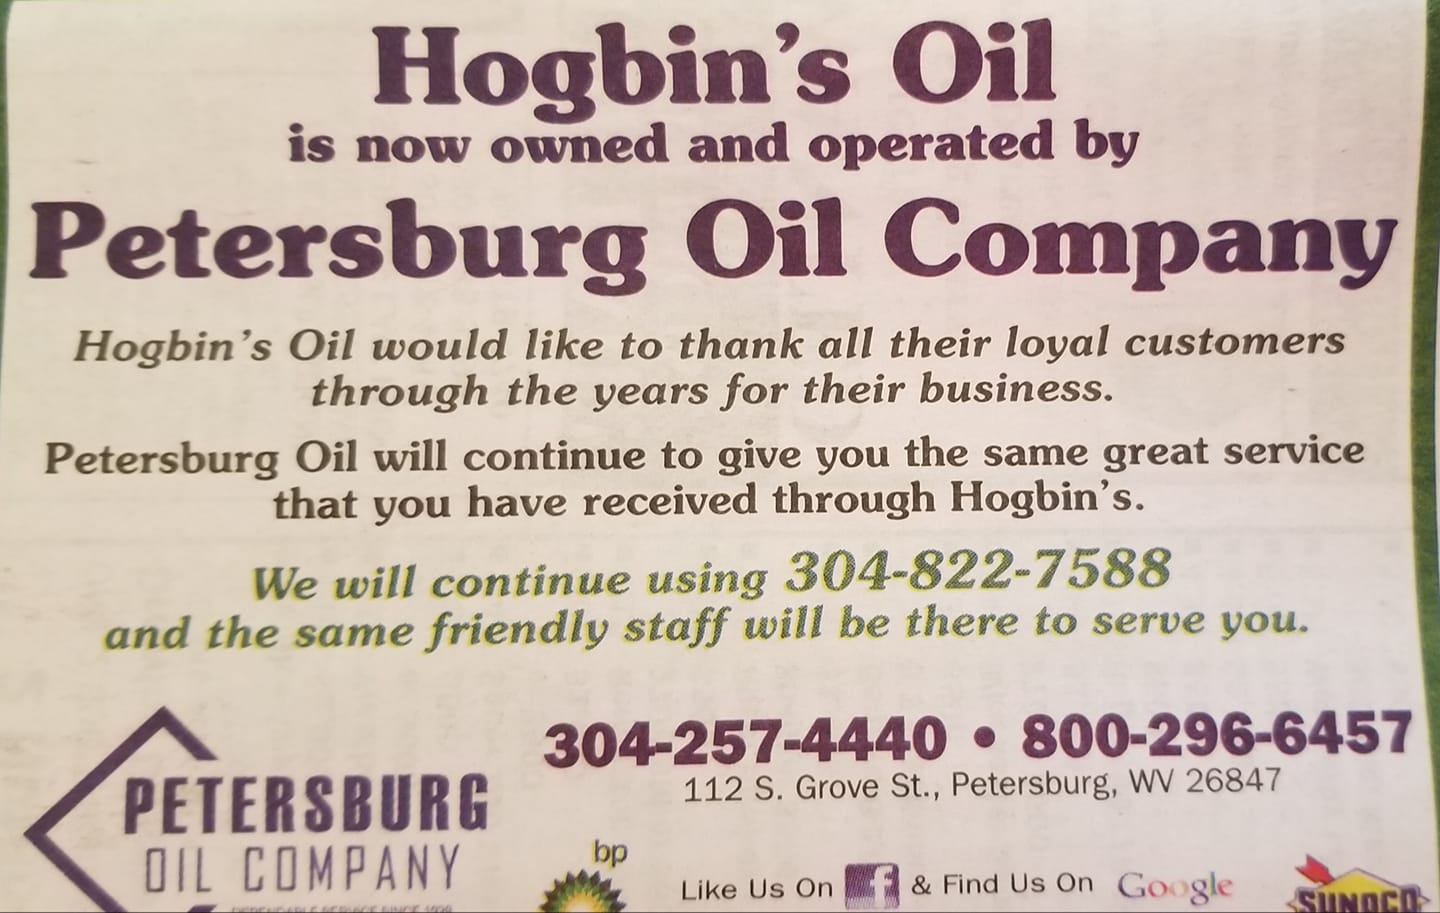 Hogbin's Oil